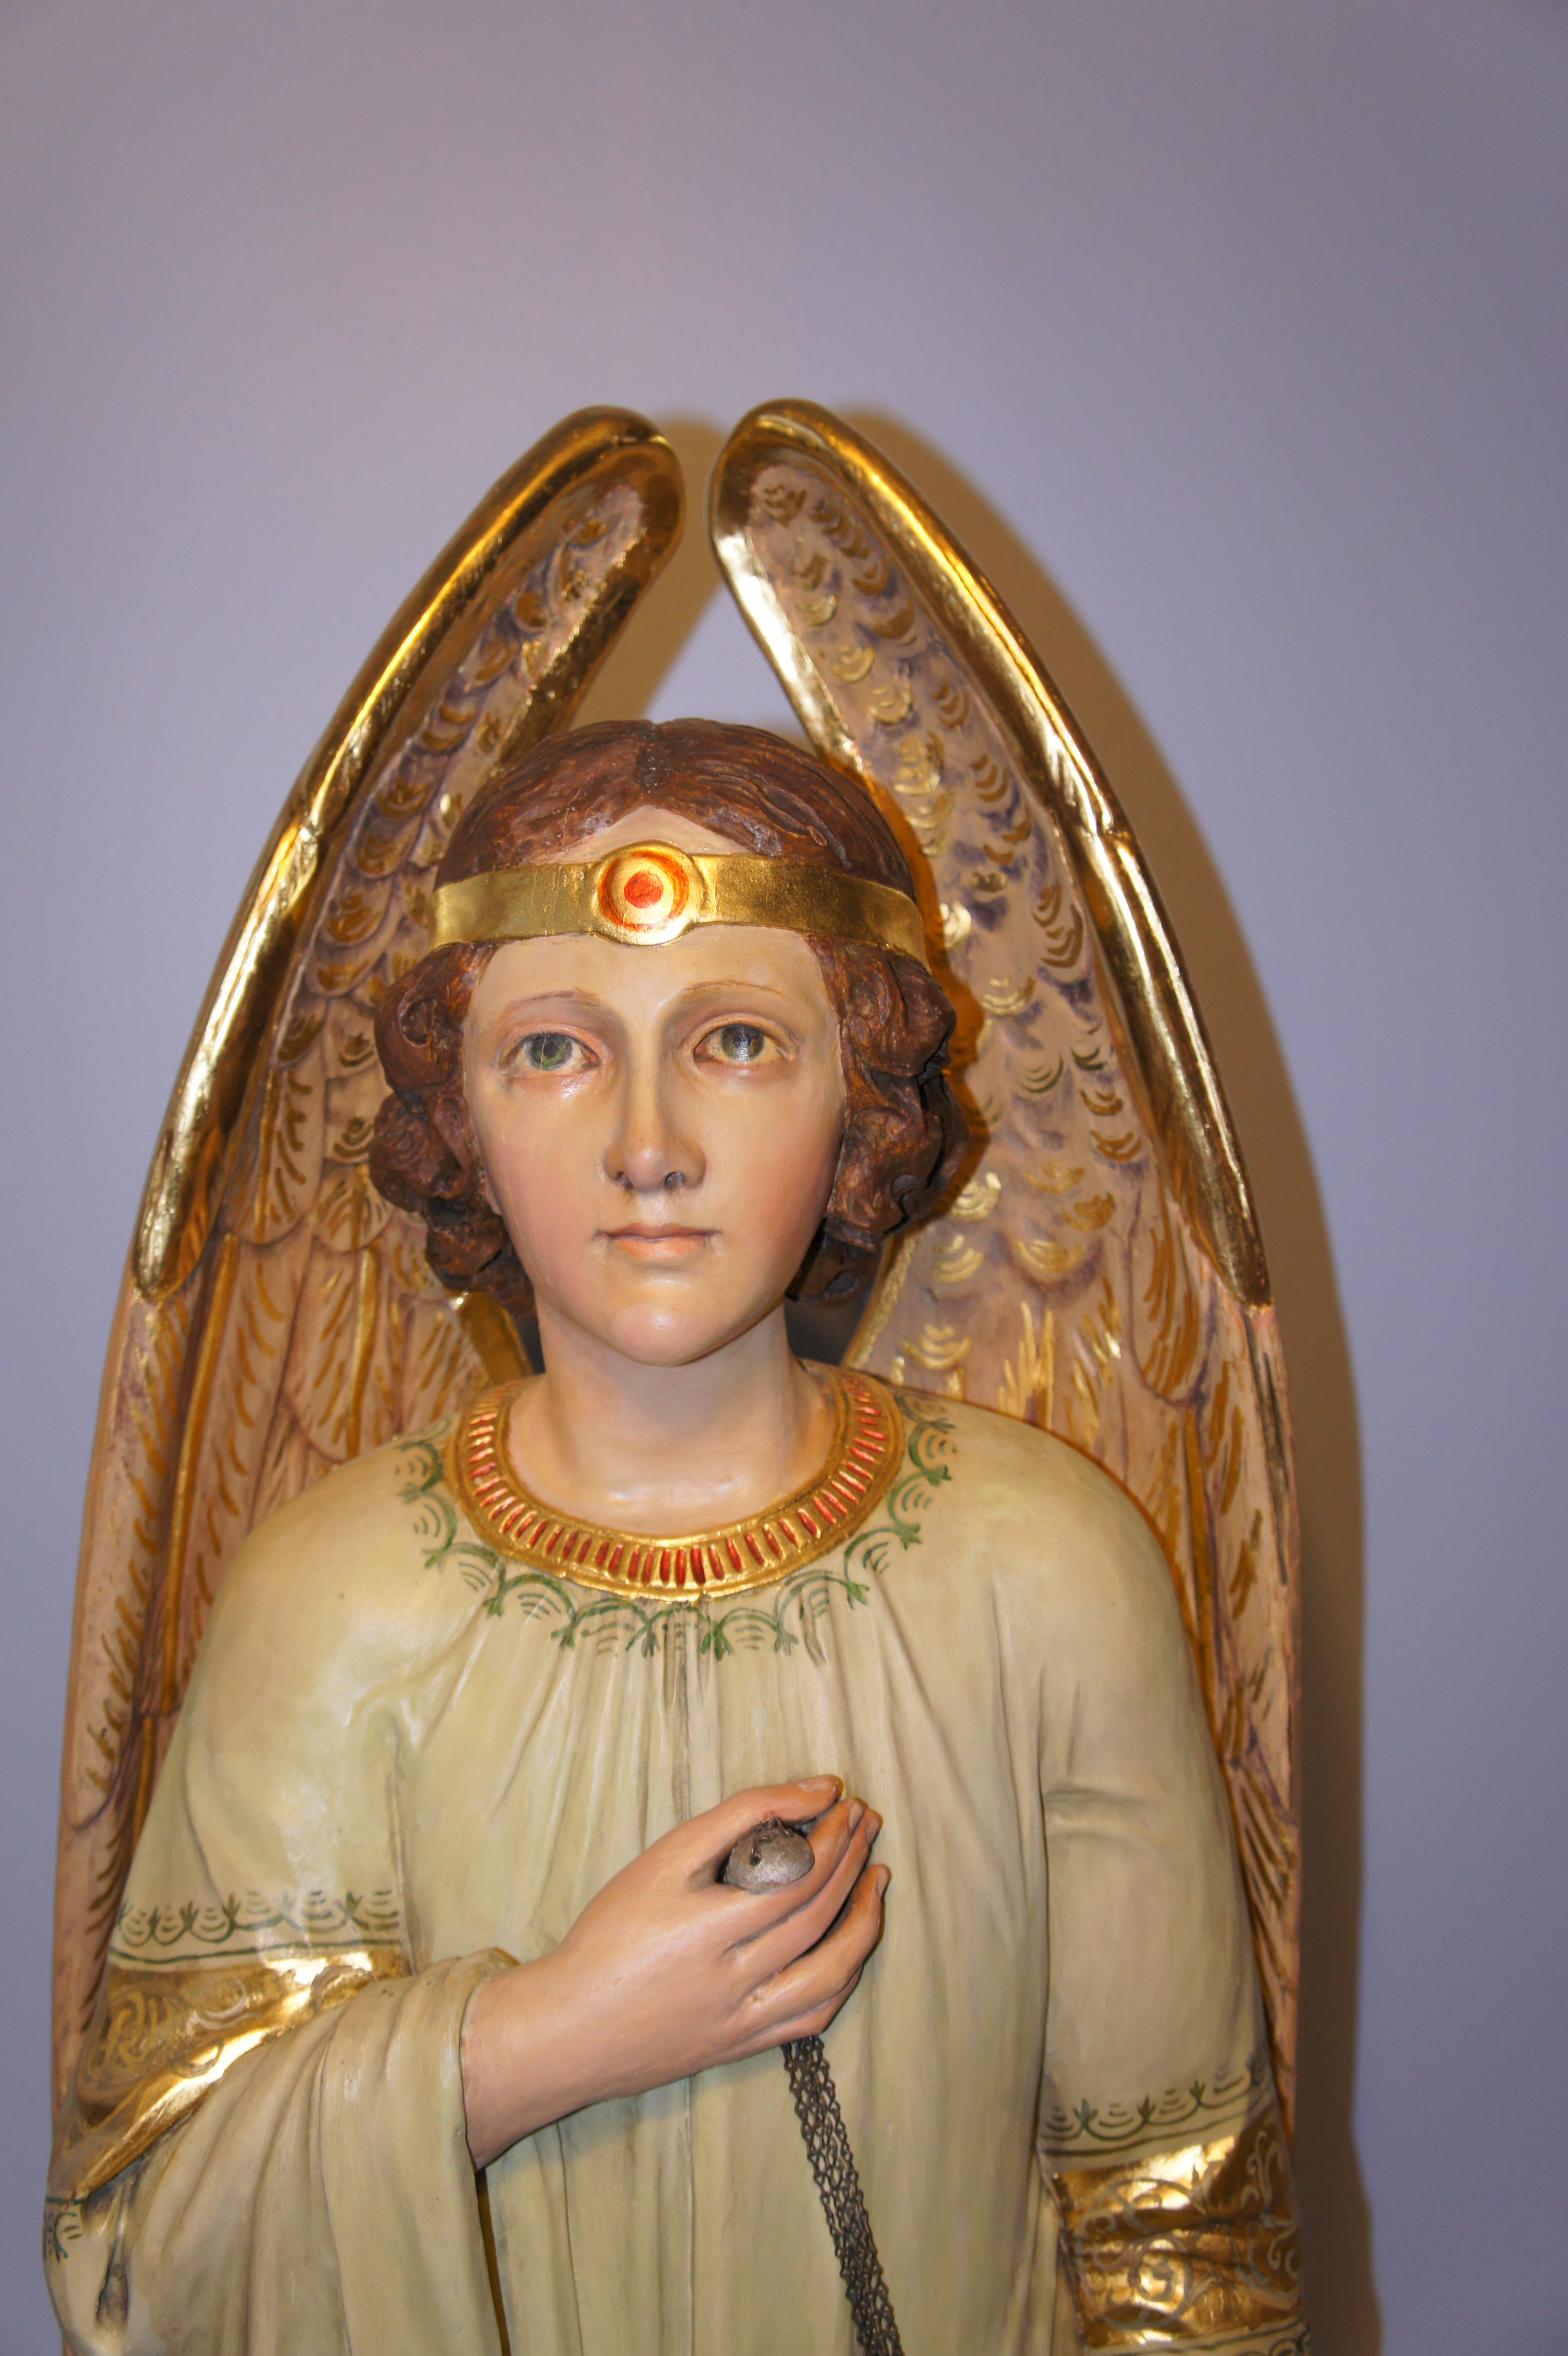 Angel after sculpture restoration and gilding